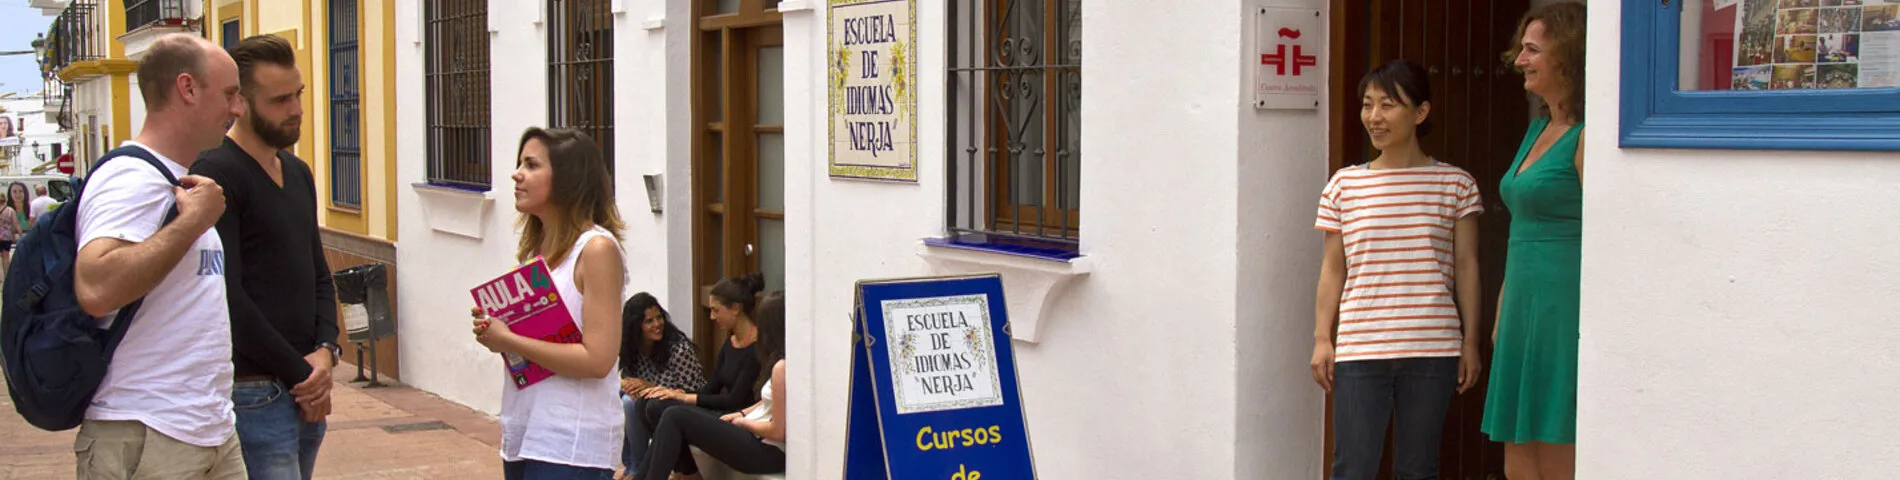 Escuela de Idiomas  bild 1